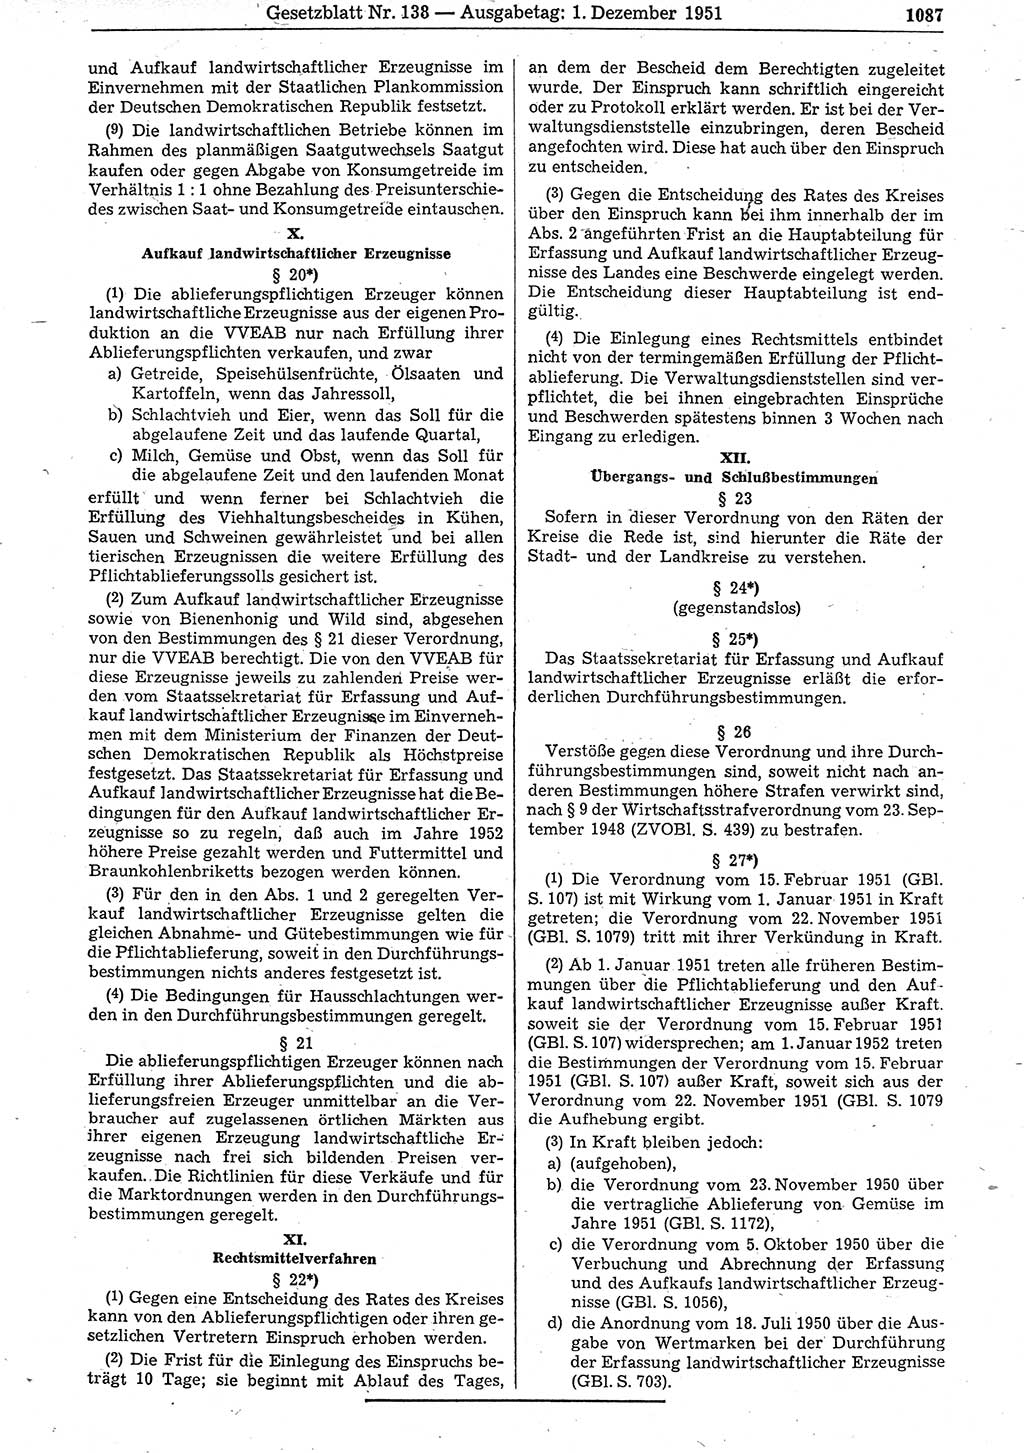 Gesetzblatt (GBl.) der Deutschen Demokratischen Republik (DDR) 1951, Seite 1087 (GBl. DDR 1951, S. 1087)